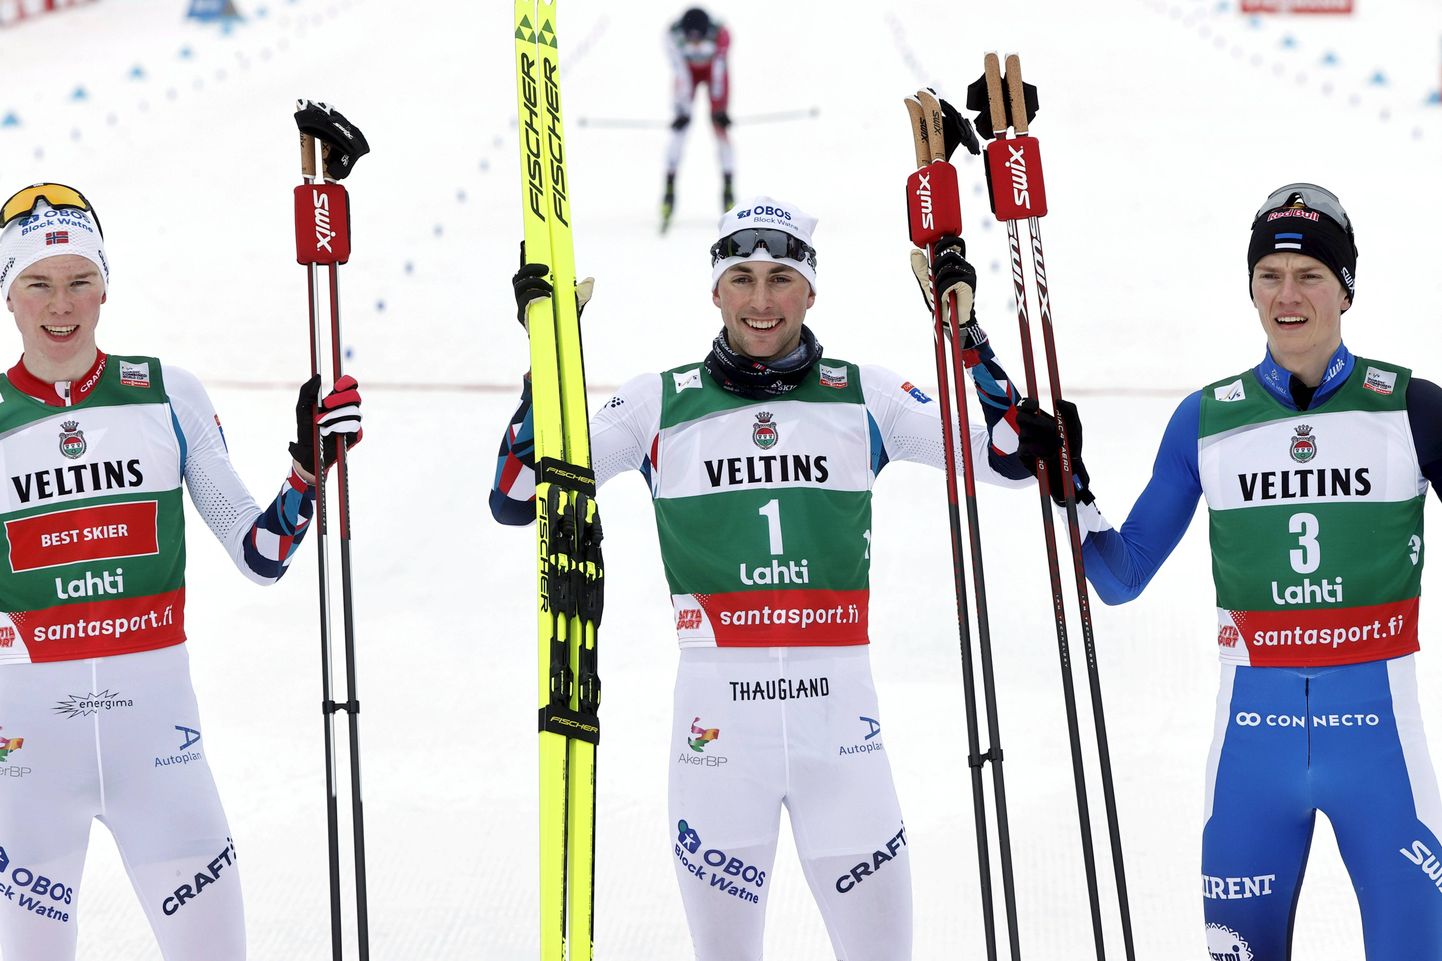 Норвежские лыжники Йенс Офтербро (слева), Ярл Магнус Риибер (в центре) и эстонский лыжник Кристьян Ильвес. Иллюстративное фото.